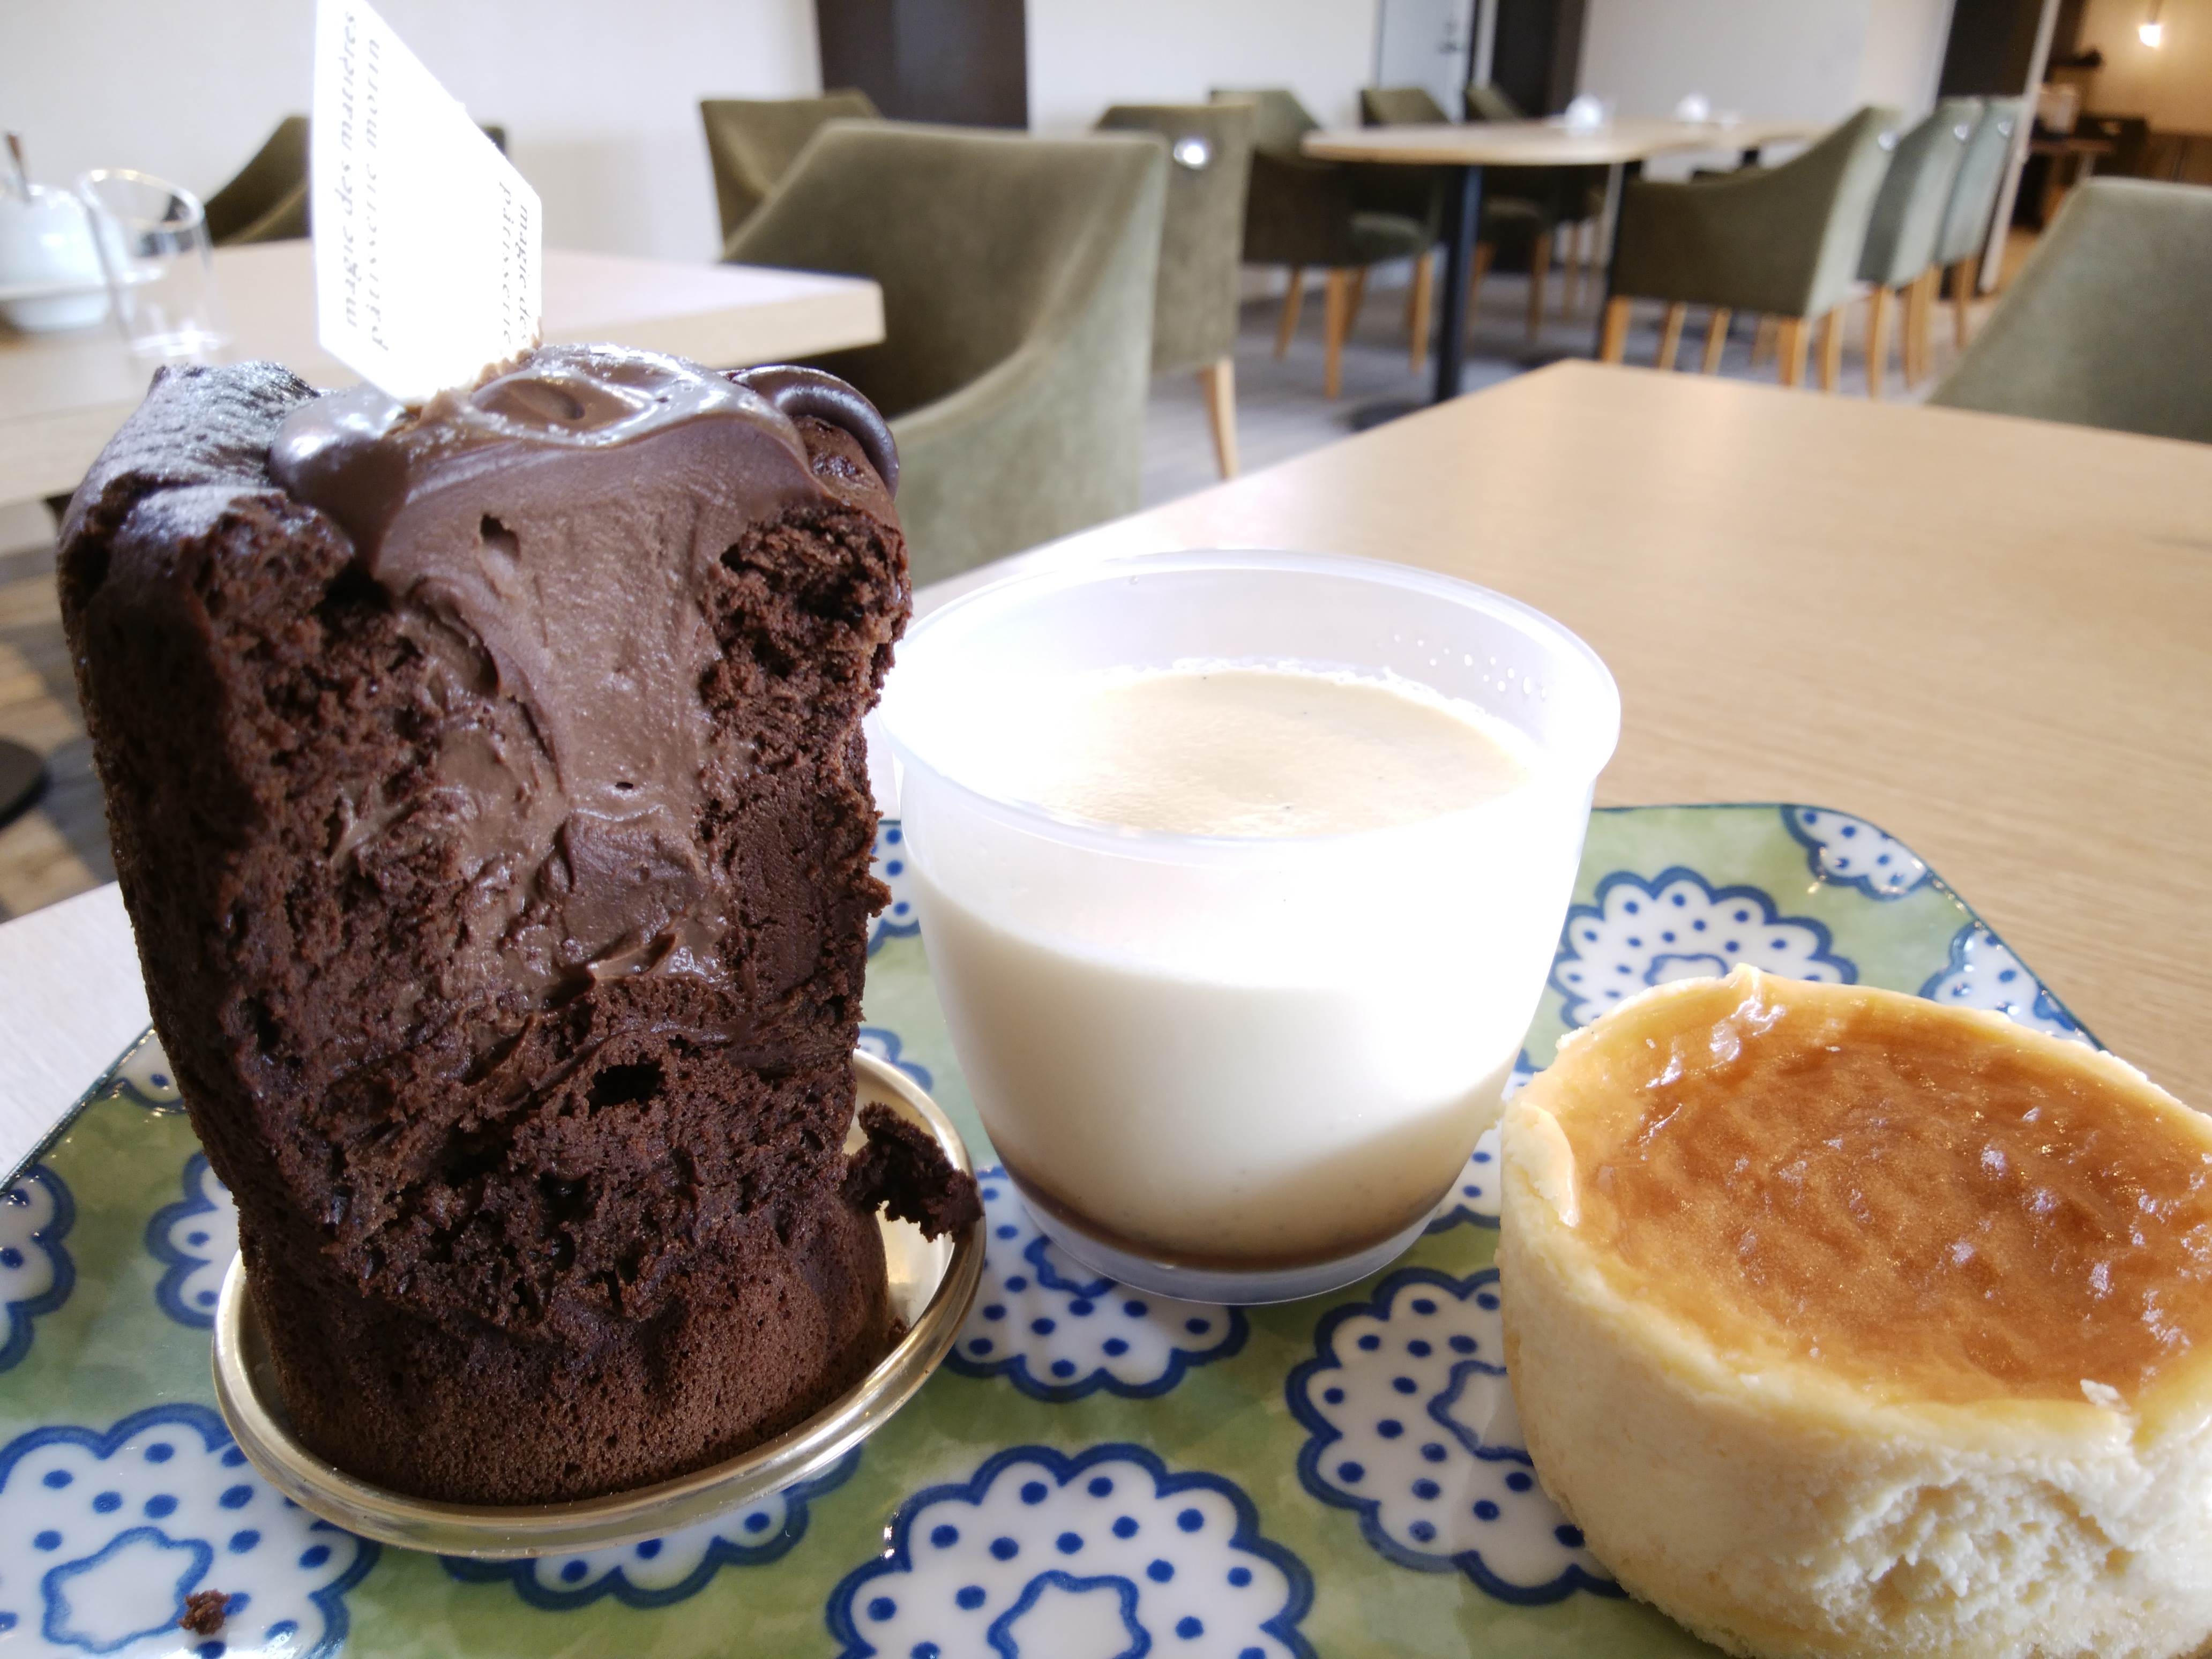 パティスリーもりん 藍住店 徳島県藍住町 三度の飯よりケーキ好き 三重県にもっとケーキバイキングを